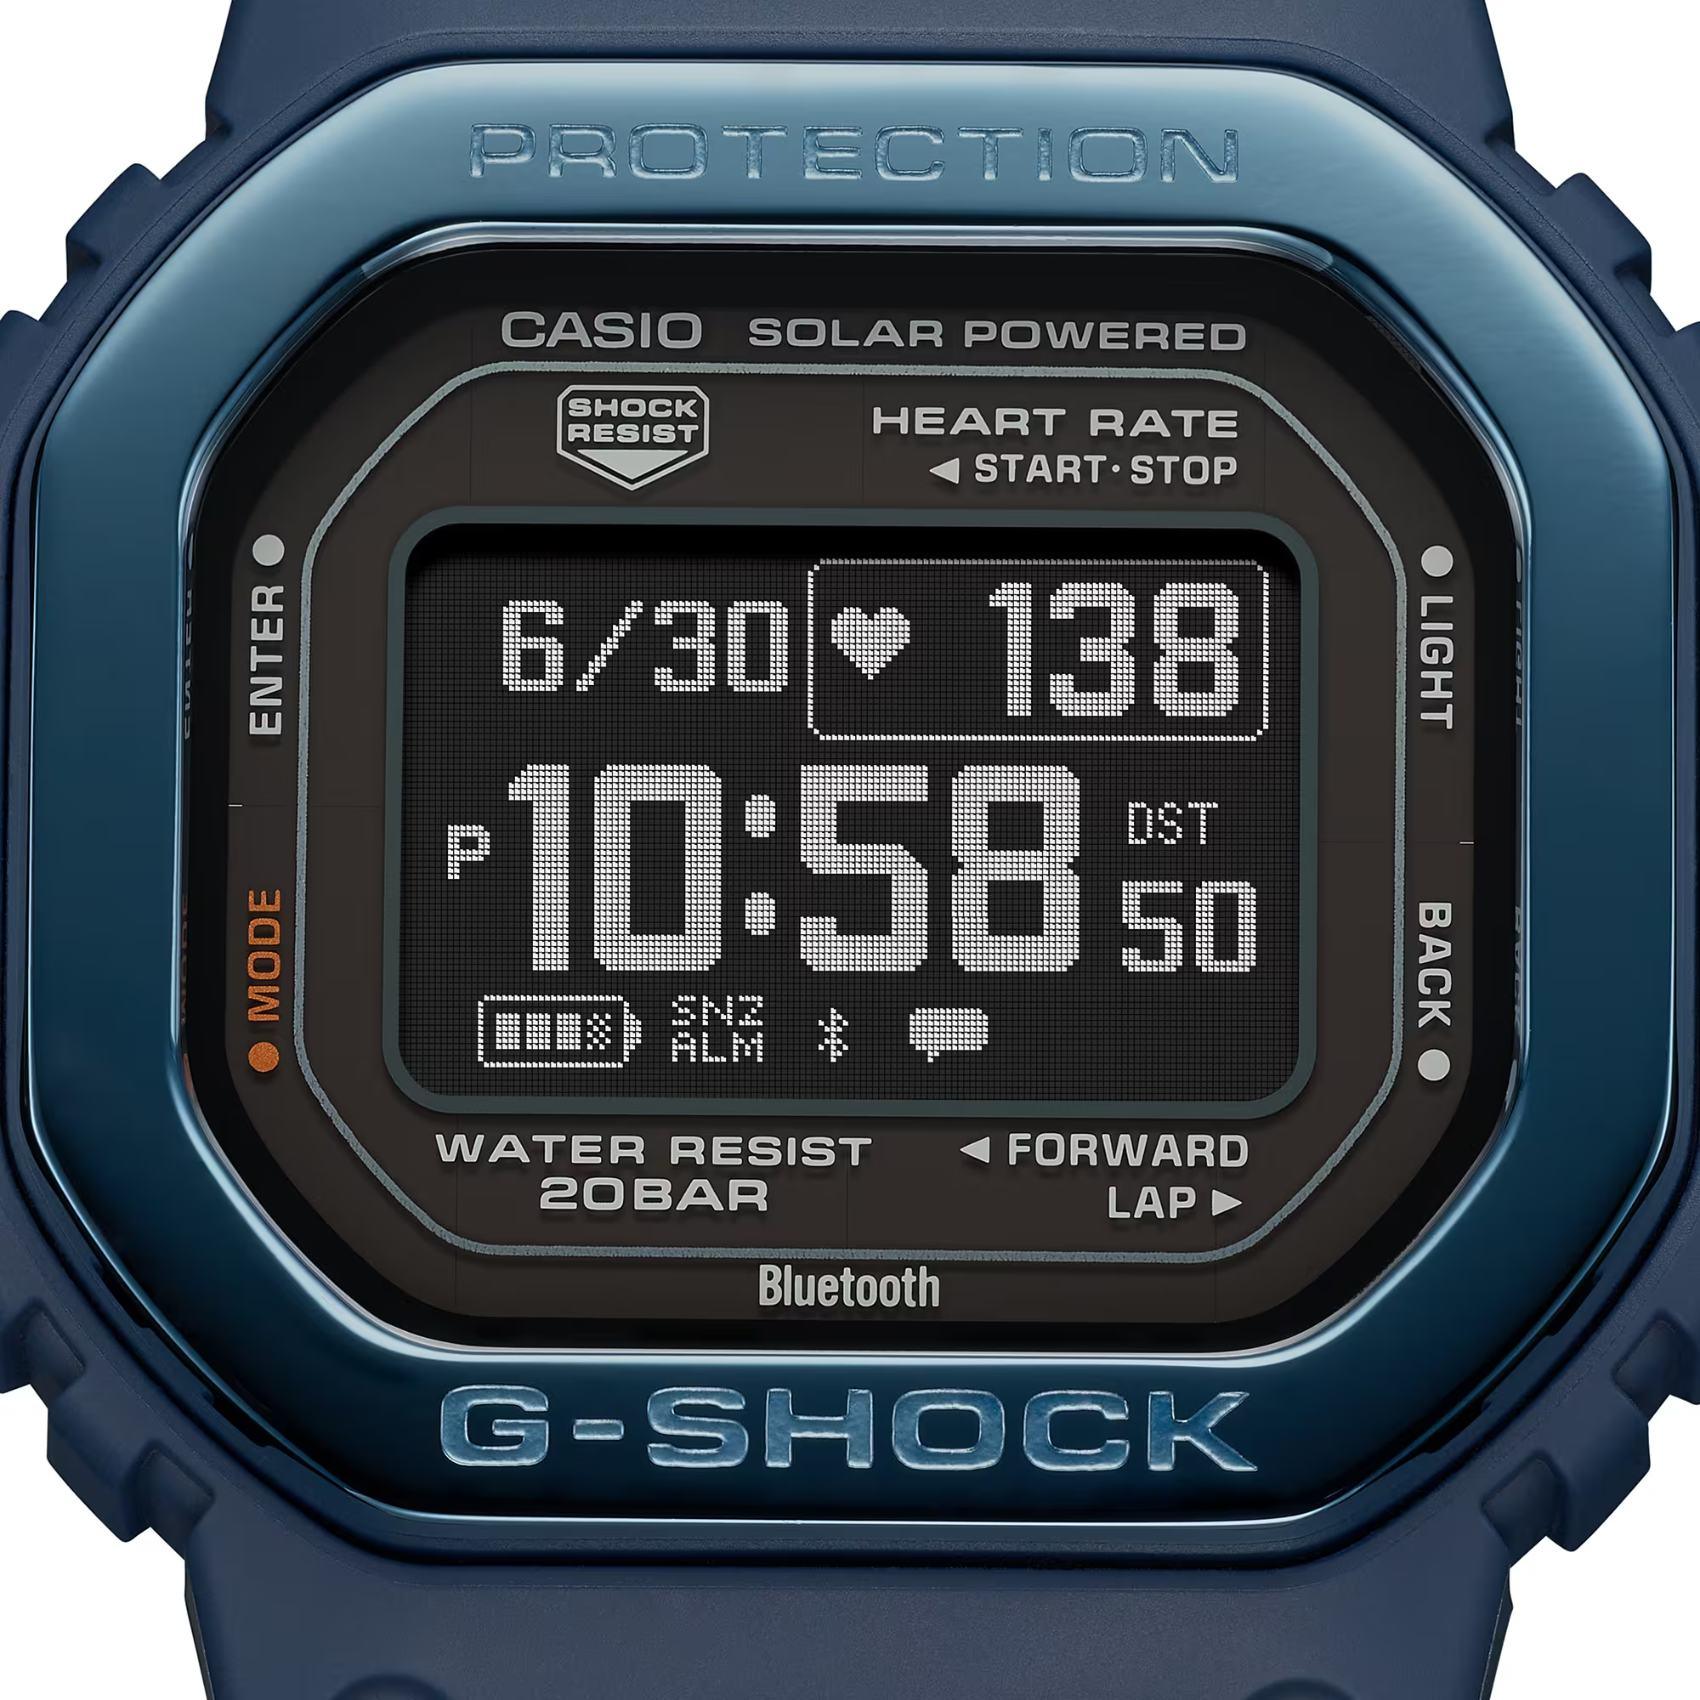 Προπονητικό ρολόι smartwatch G-Squad Casio G-Shock DW-H5600MB-2ER Solar με μπλε καουτσούκ λουράκι και μαύρο καντράν διαμέτρου 44,5mm σε τετράγωνο σχημα.Προπονητικό ρολόι smartwatch G-Squad Casio G-Shock DW-H5600MB-2ER Solar με μπλε καουτσούκ λουράκι και μαύρο καντράν διαμέτρου 44,5mm σε τετράγωνο σχημα.